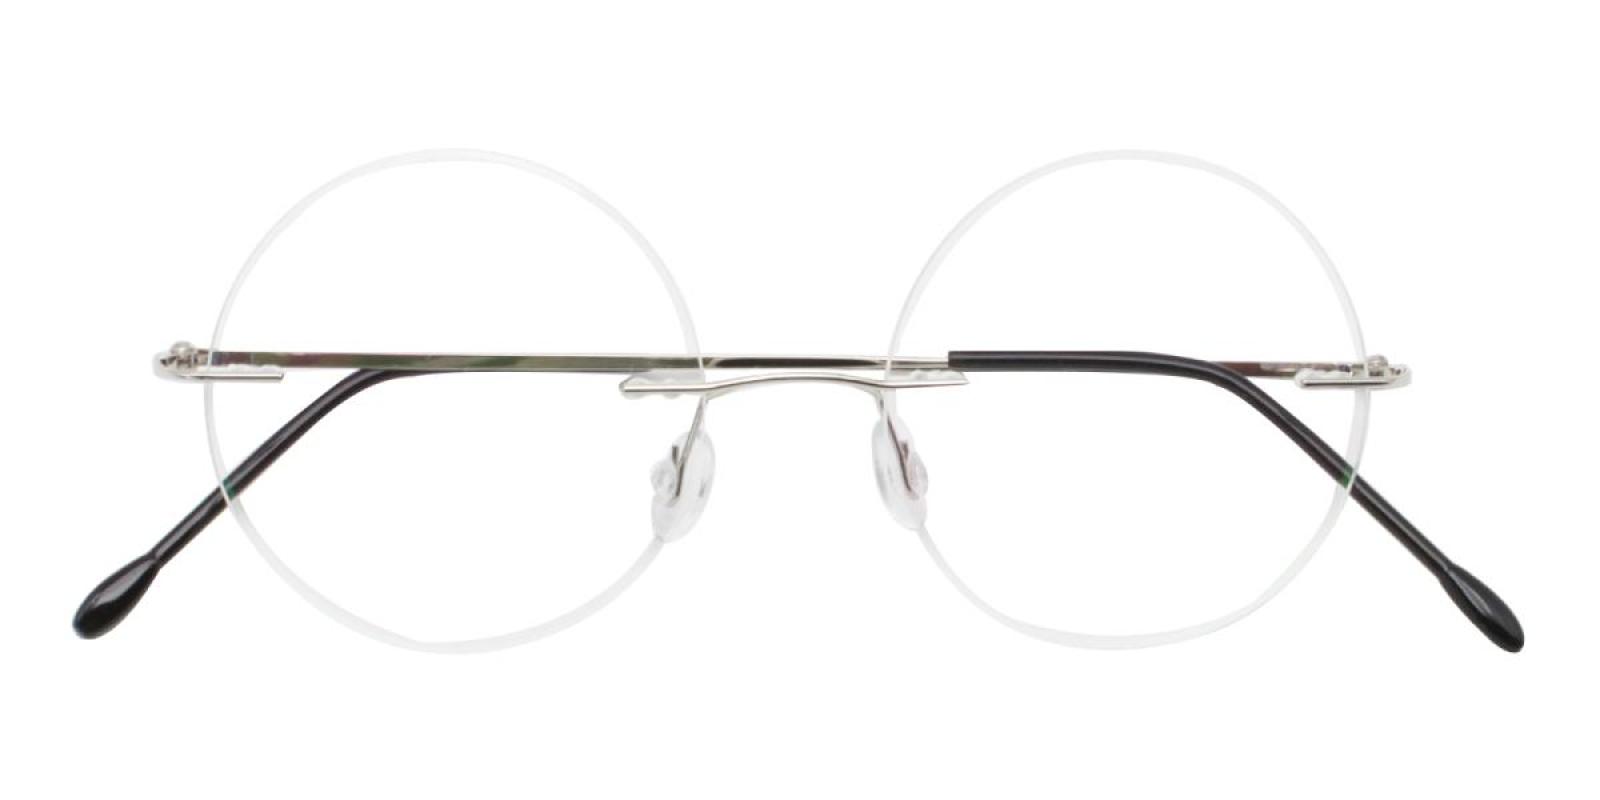 Knewphey-Silver--Metal-Eyeglasses-detail